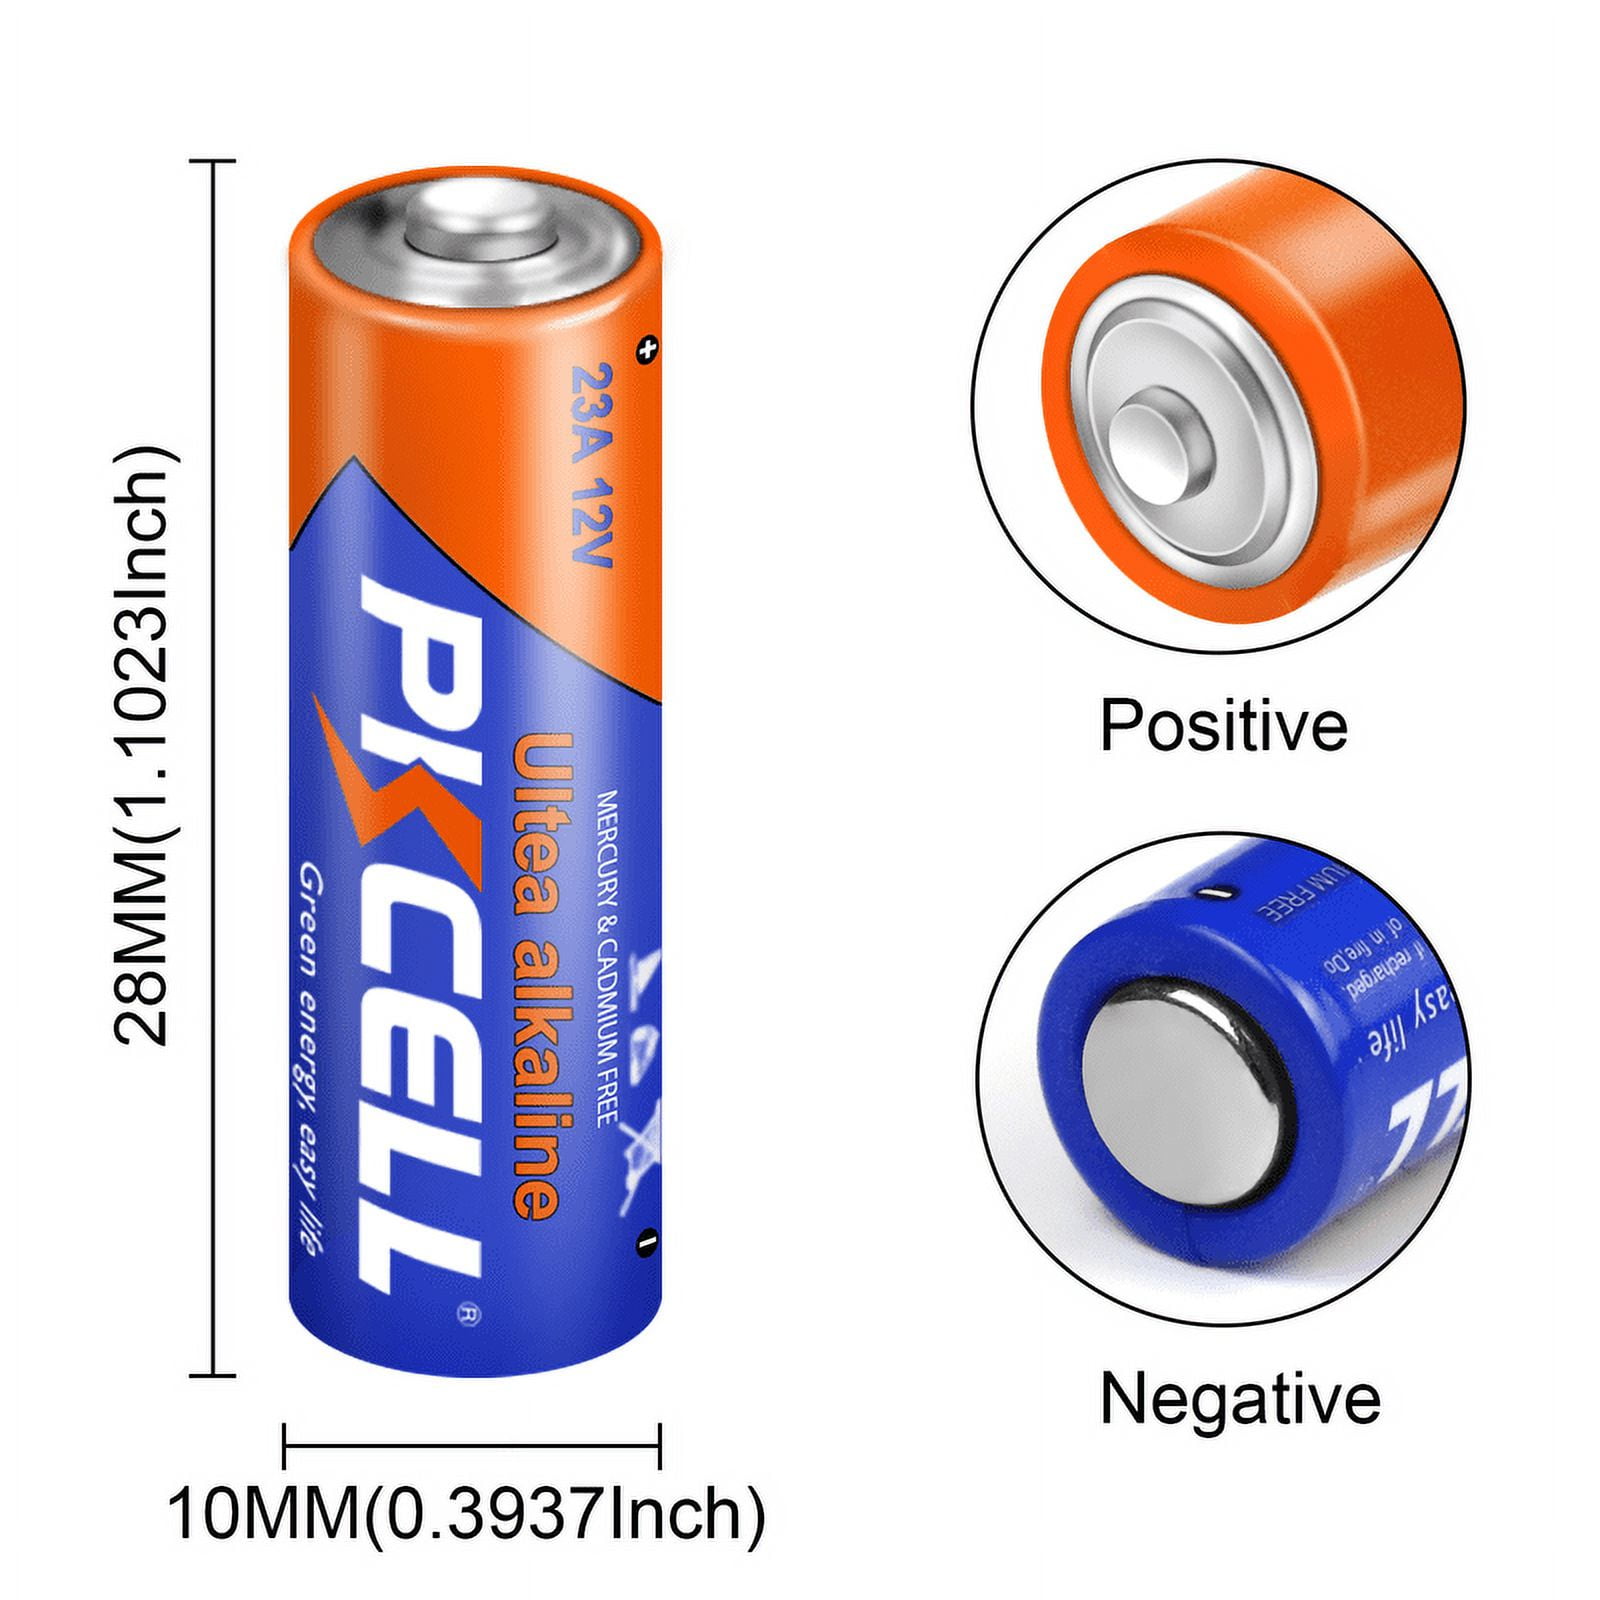 Kameda Alkaline batteri - 12V A23 2-pak